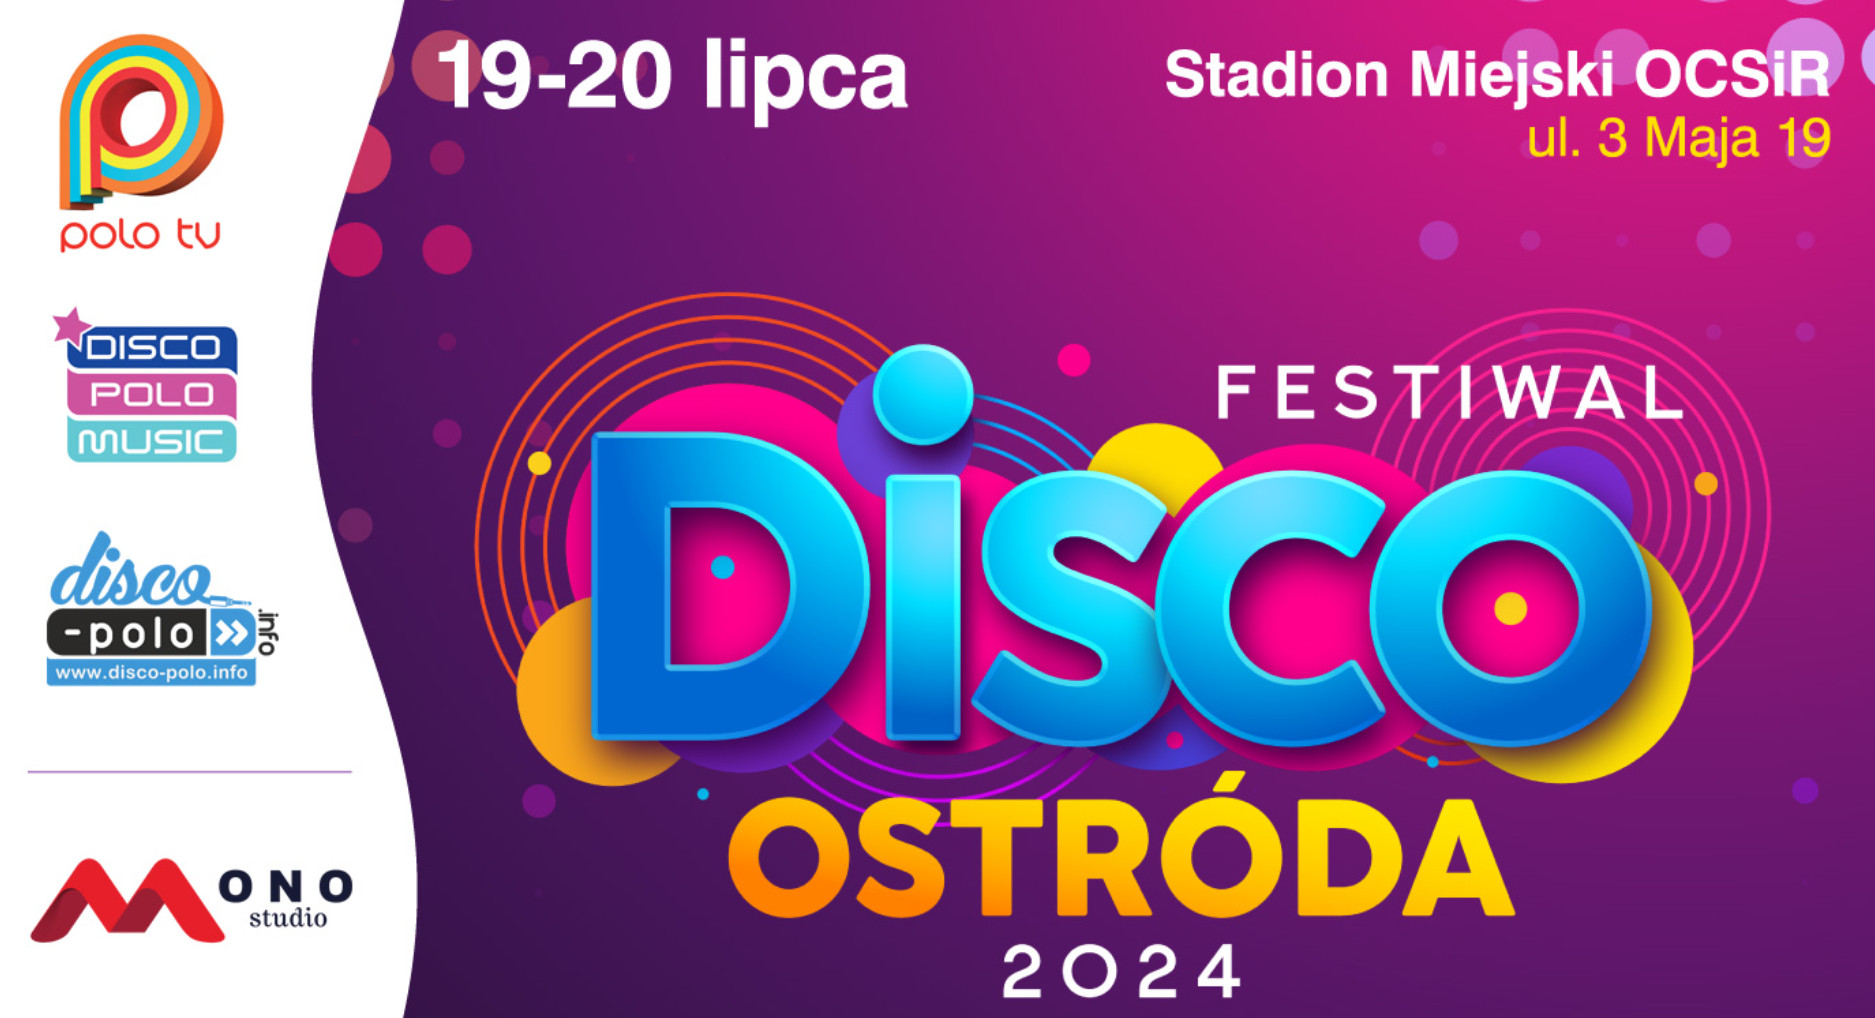 Festiwal Disco Ostróda 2024: Nie Przegap Promocji na Bilety!